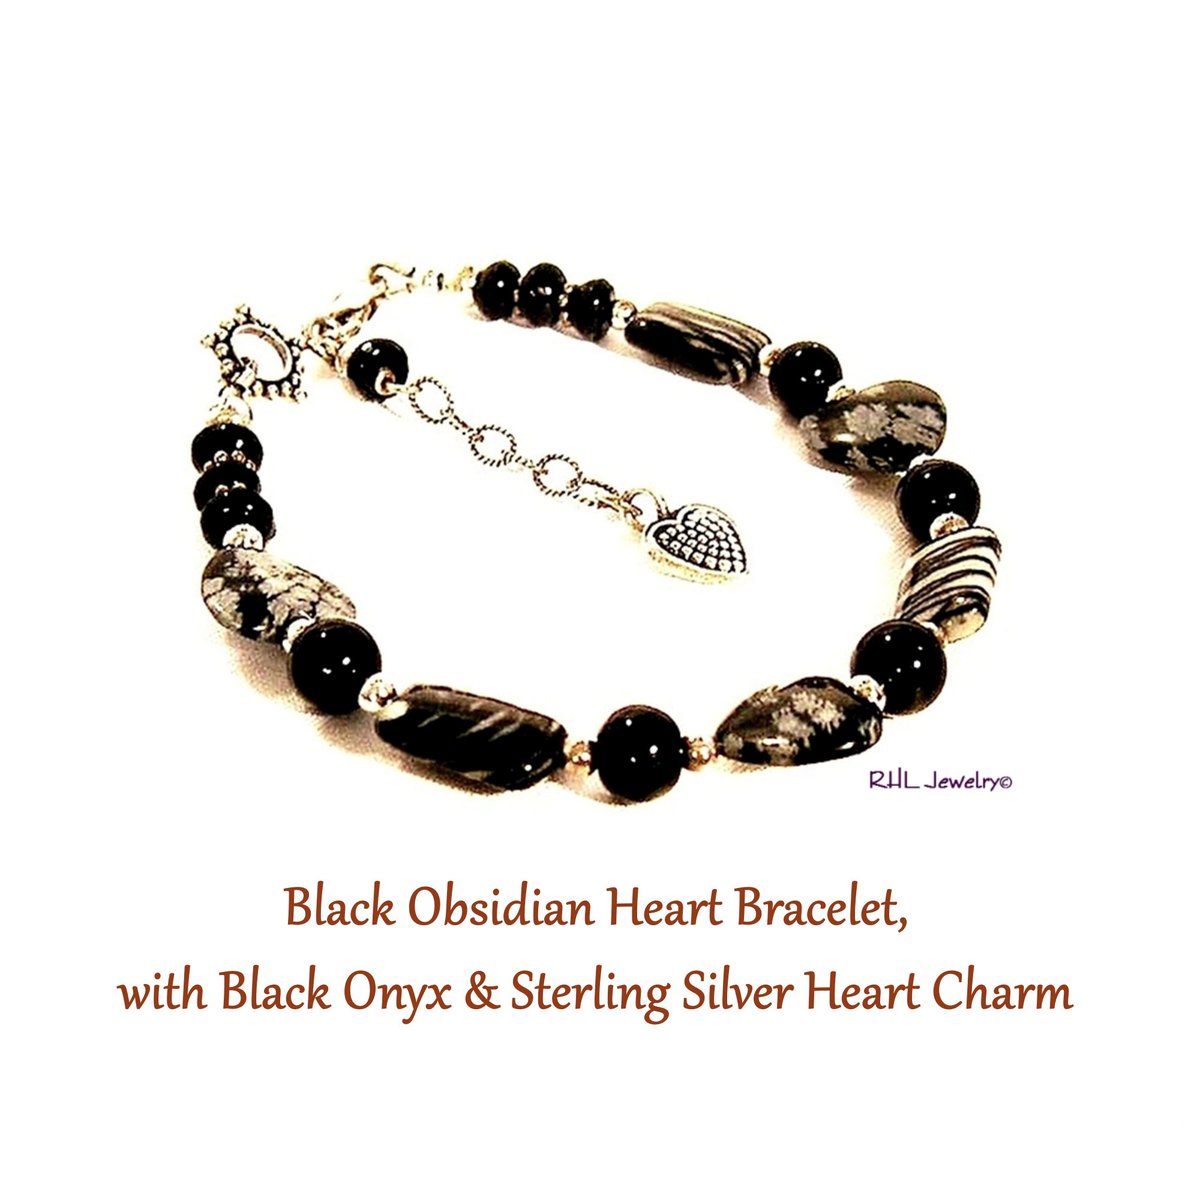 Black Obsidian Heart Bracelet, Black Onyx, Sterling Silver Heart Charm, Chakra Jewelry tuppu.net/5ea93ce5 #etsygifts ##chakra #ScorpioLeoAries